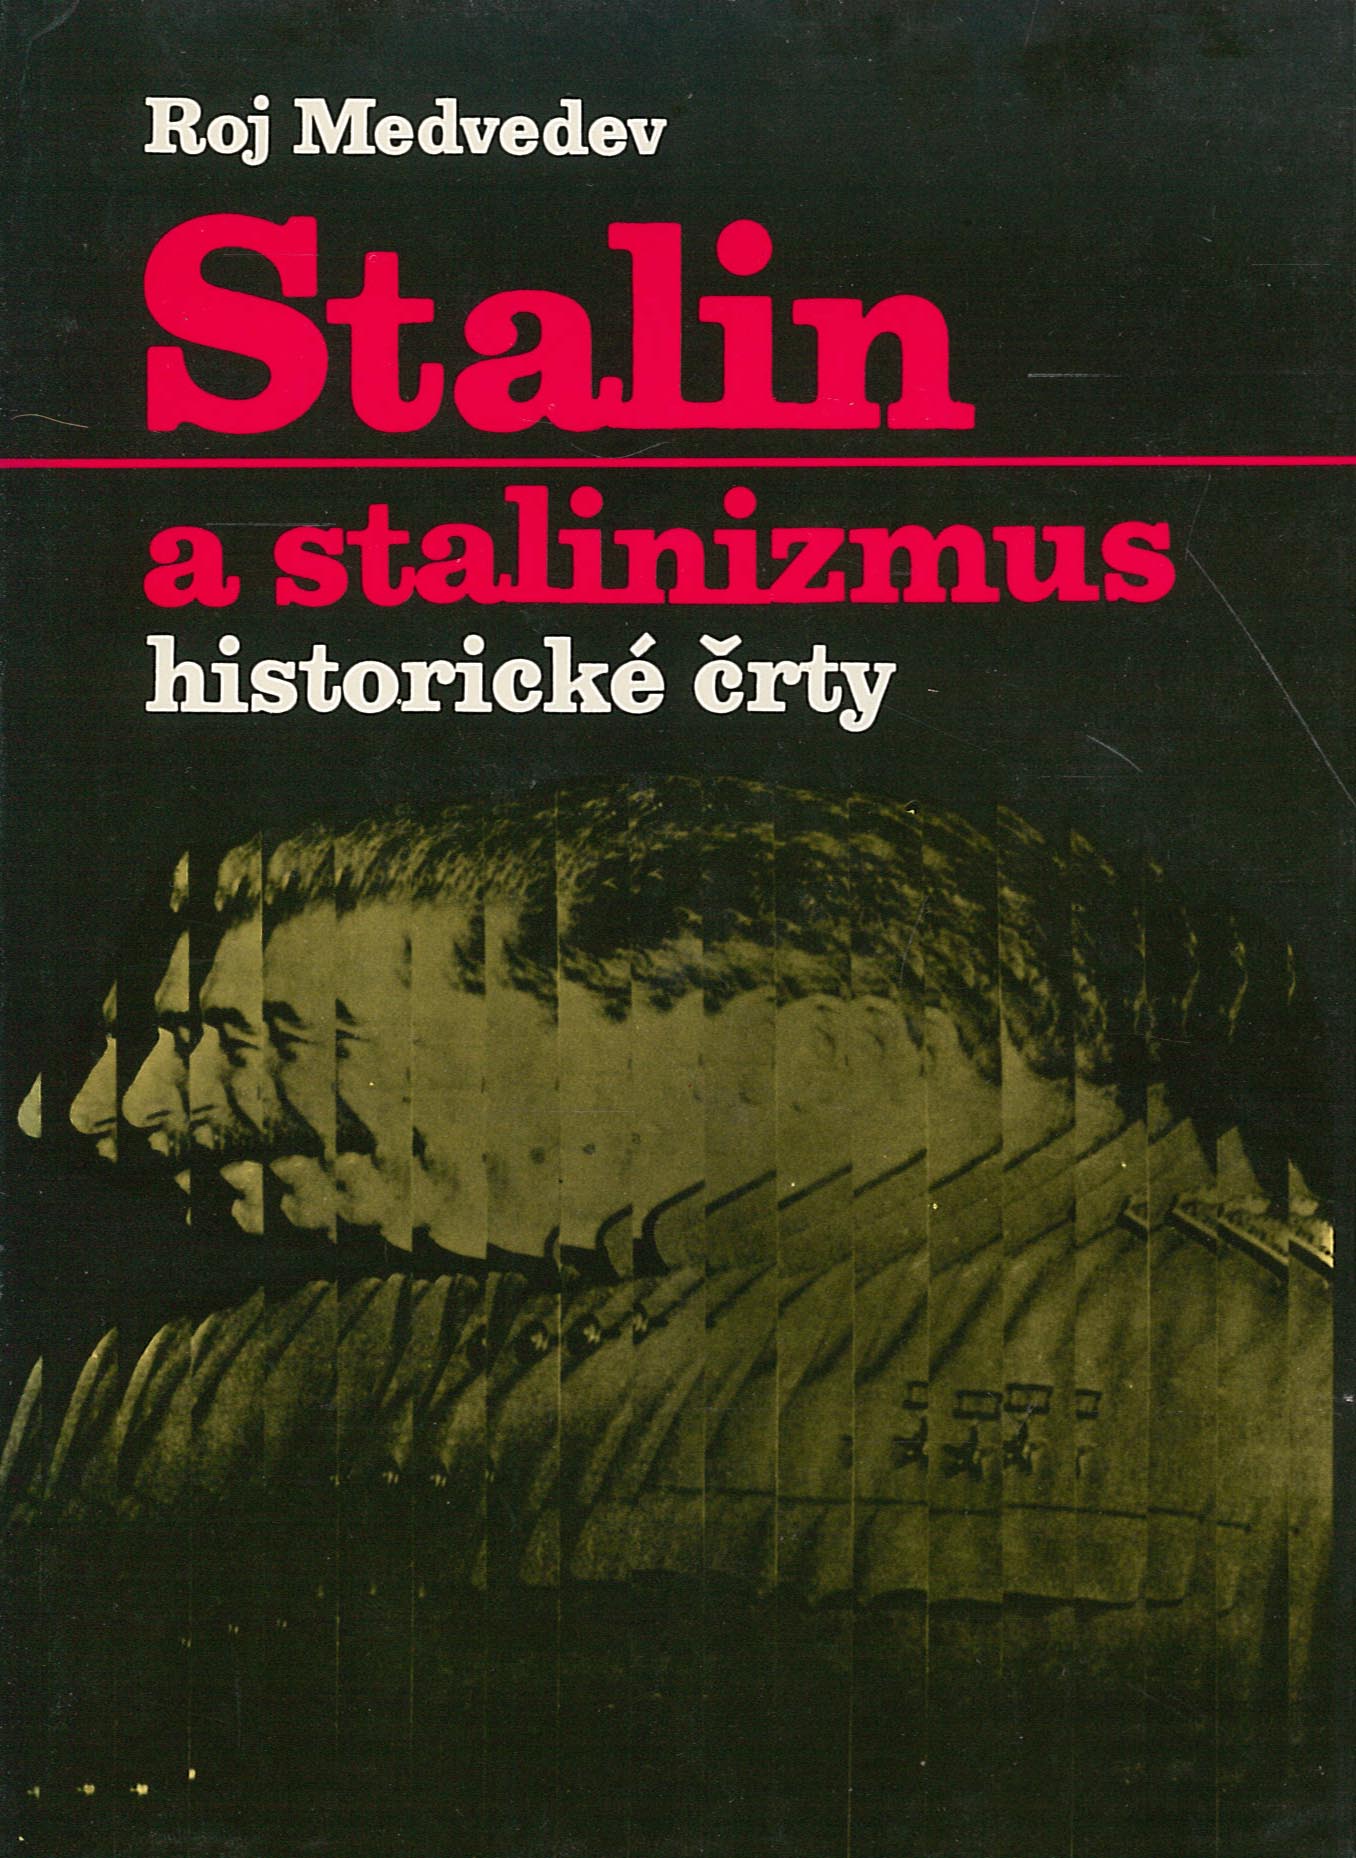 Stalin a stalinizmus (Roj Medvedev)